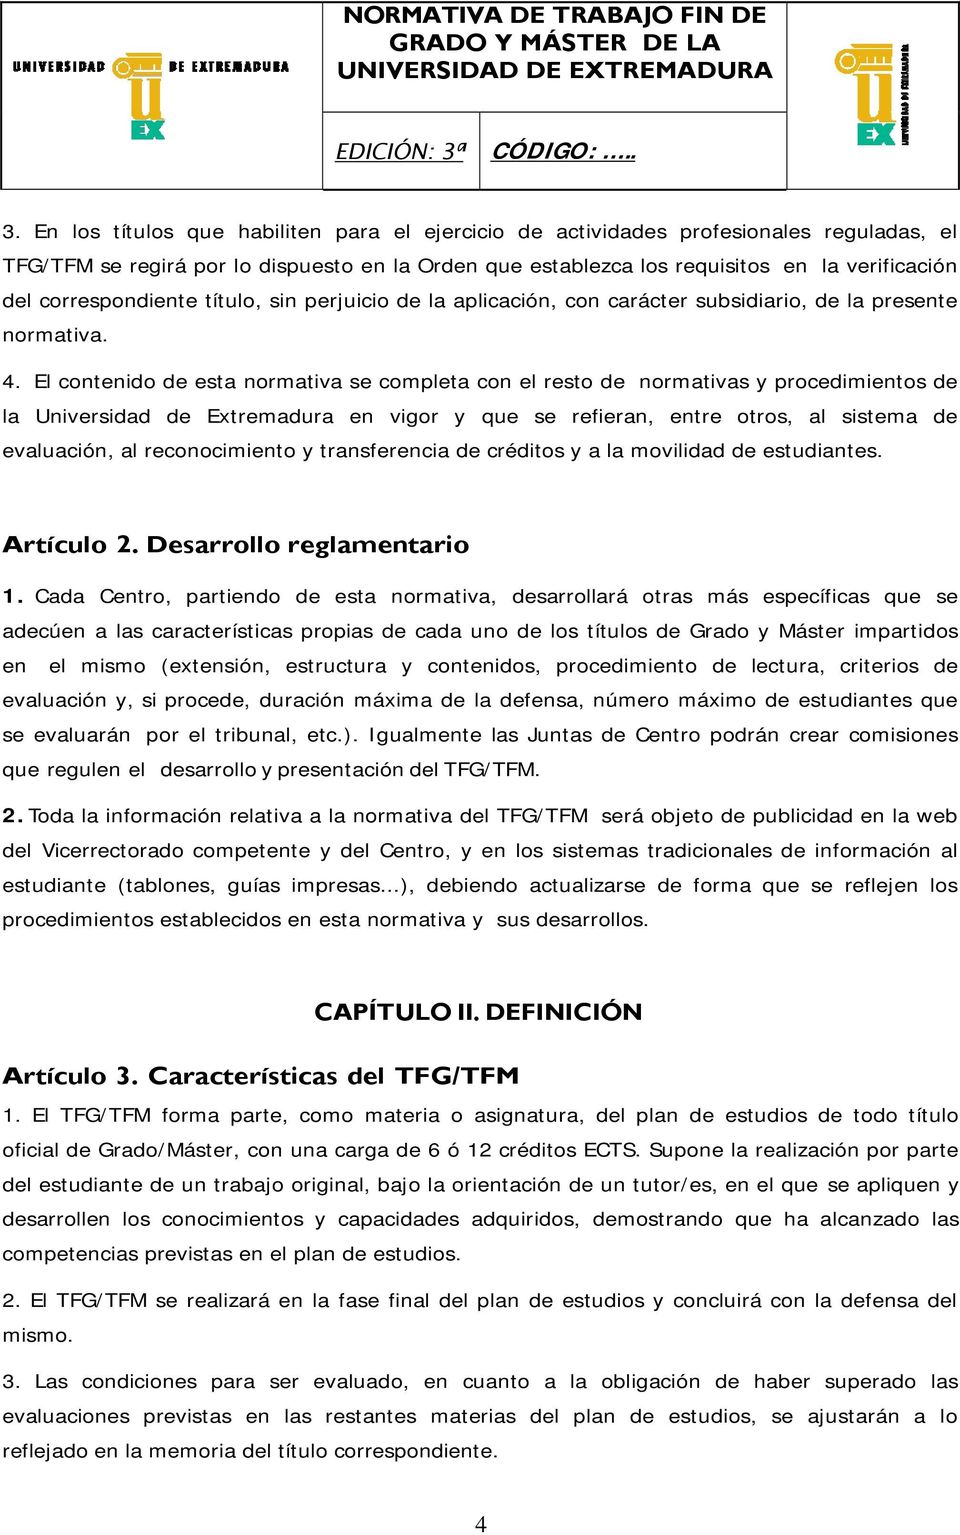 El contenido de esta normativa se completa con el resto de normativas y procedimientos de la Universidad de Extremadura en vigor y que se refieran, entre otros, al sistema de evaluación, al